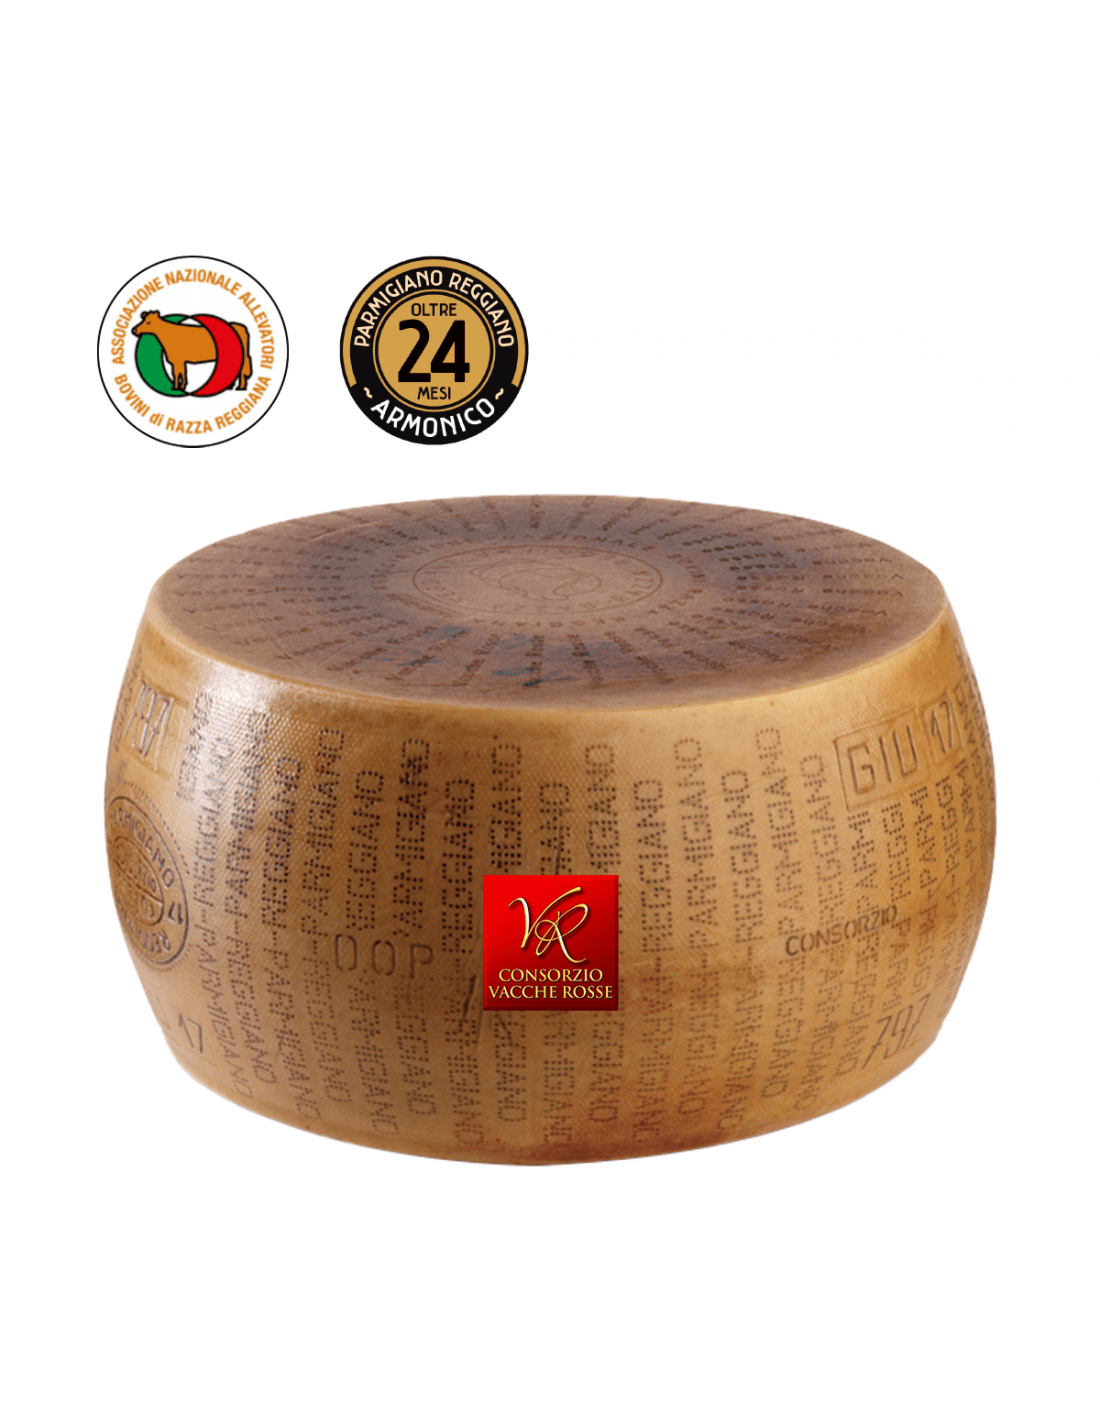 Forma intera Parmigiano Reggiano Vacche Rosse 24 mesi - Vendita online a  prezzo speciale